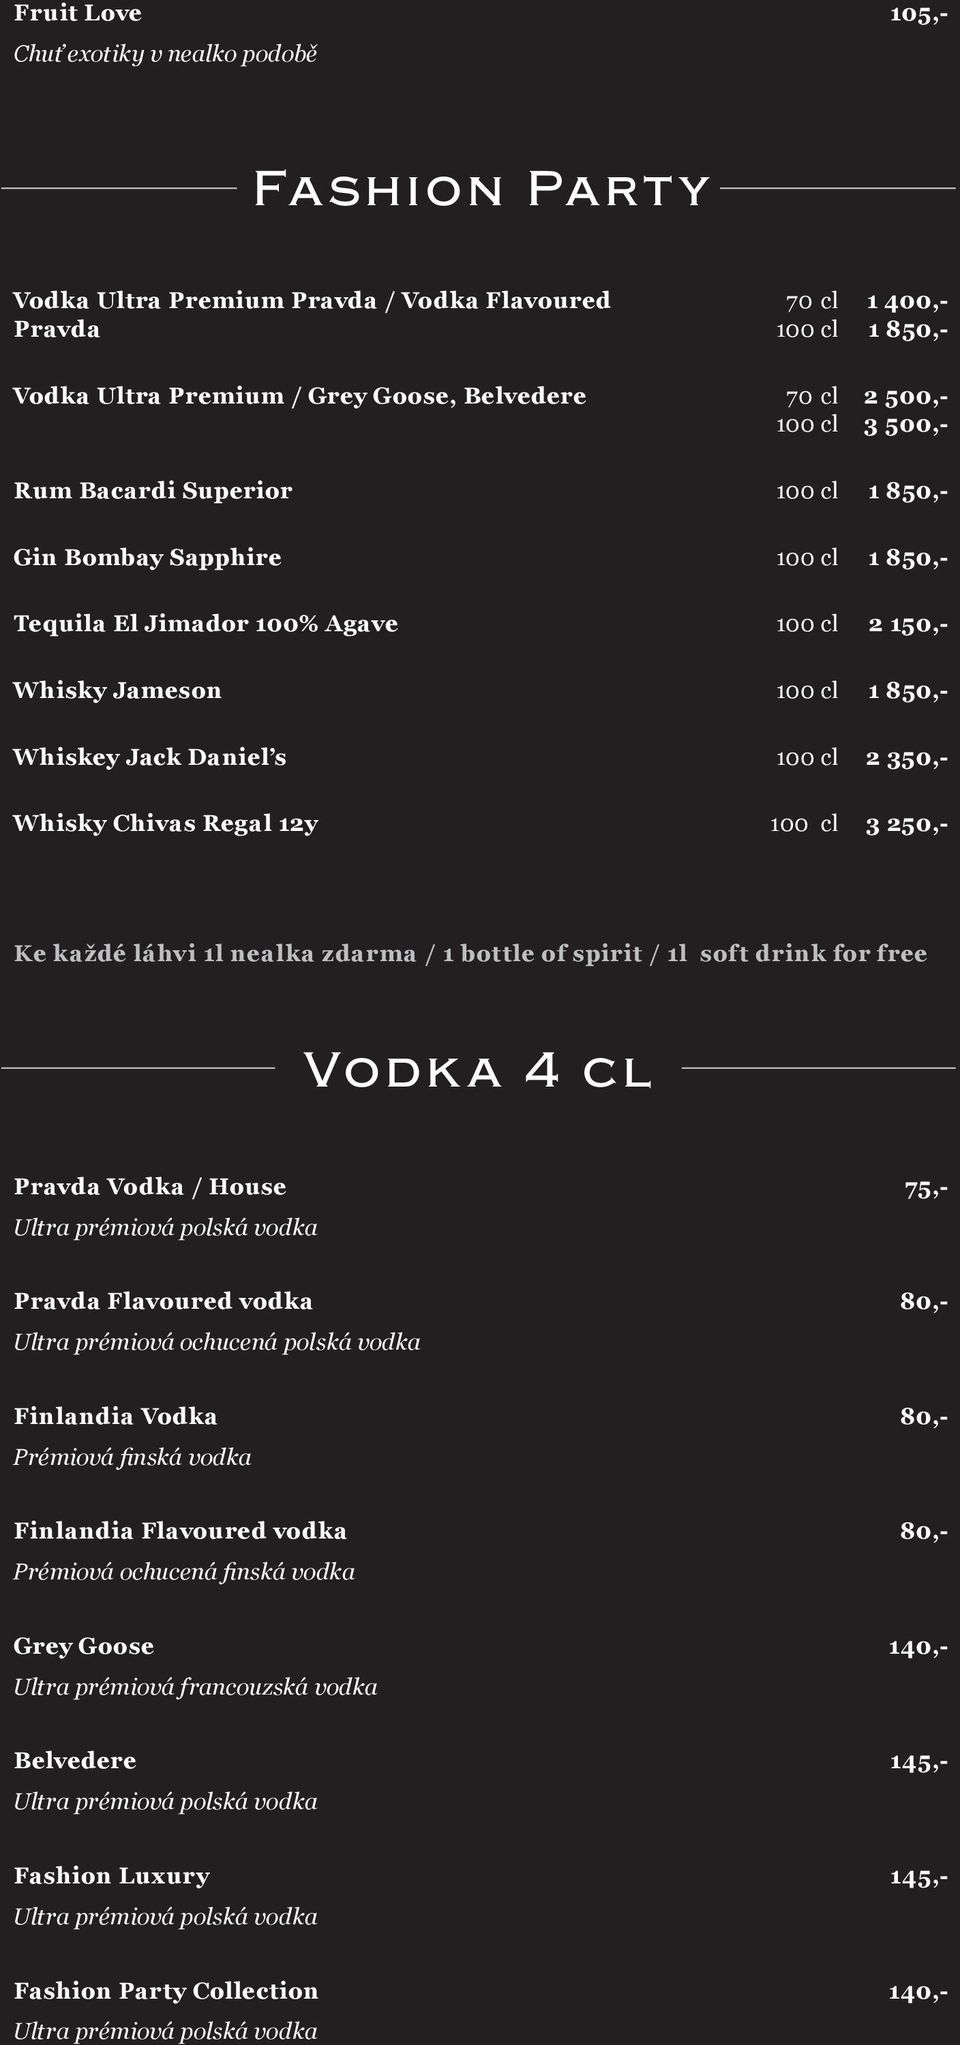 Whisky Chivas Regal 12y 100 cl 3 250,- Ke každé láhvi 1l nealka zdarma / 1 bottle of spirit / 1l soft drink for free Vodk a 4 cl Pravda Vodka / House 75,- Ultra prémiová polská vodka Pravda Flavoured